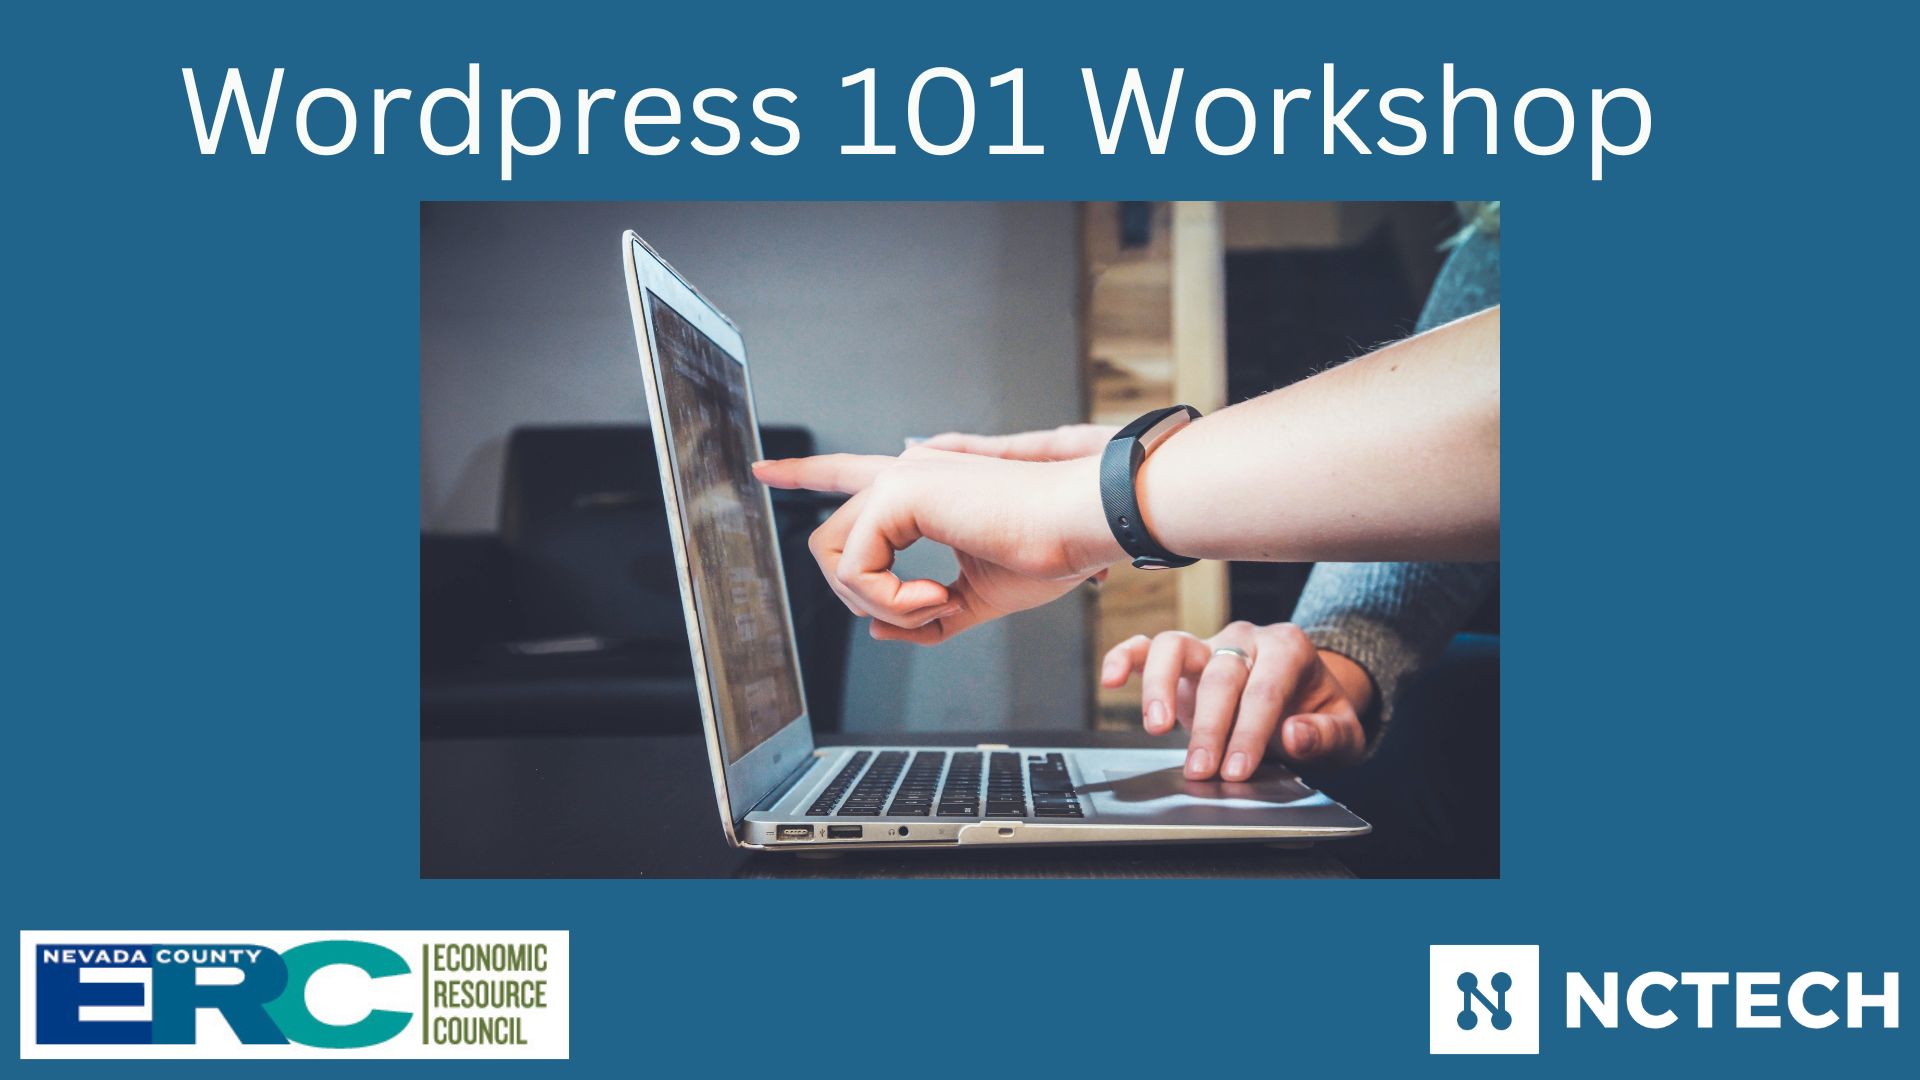 Wordpress 101 Workshop 1 n8bHgI.tmp